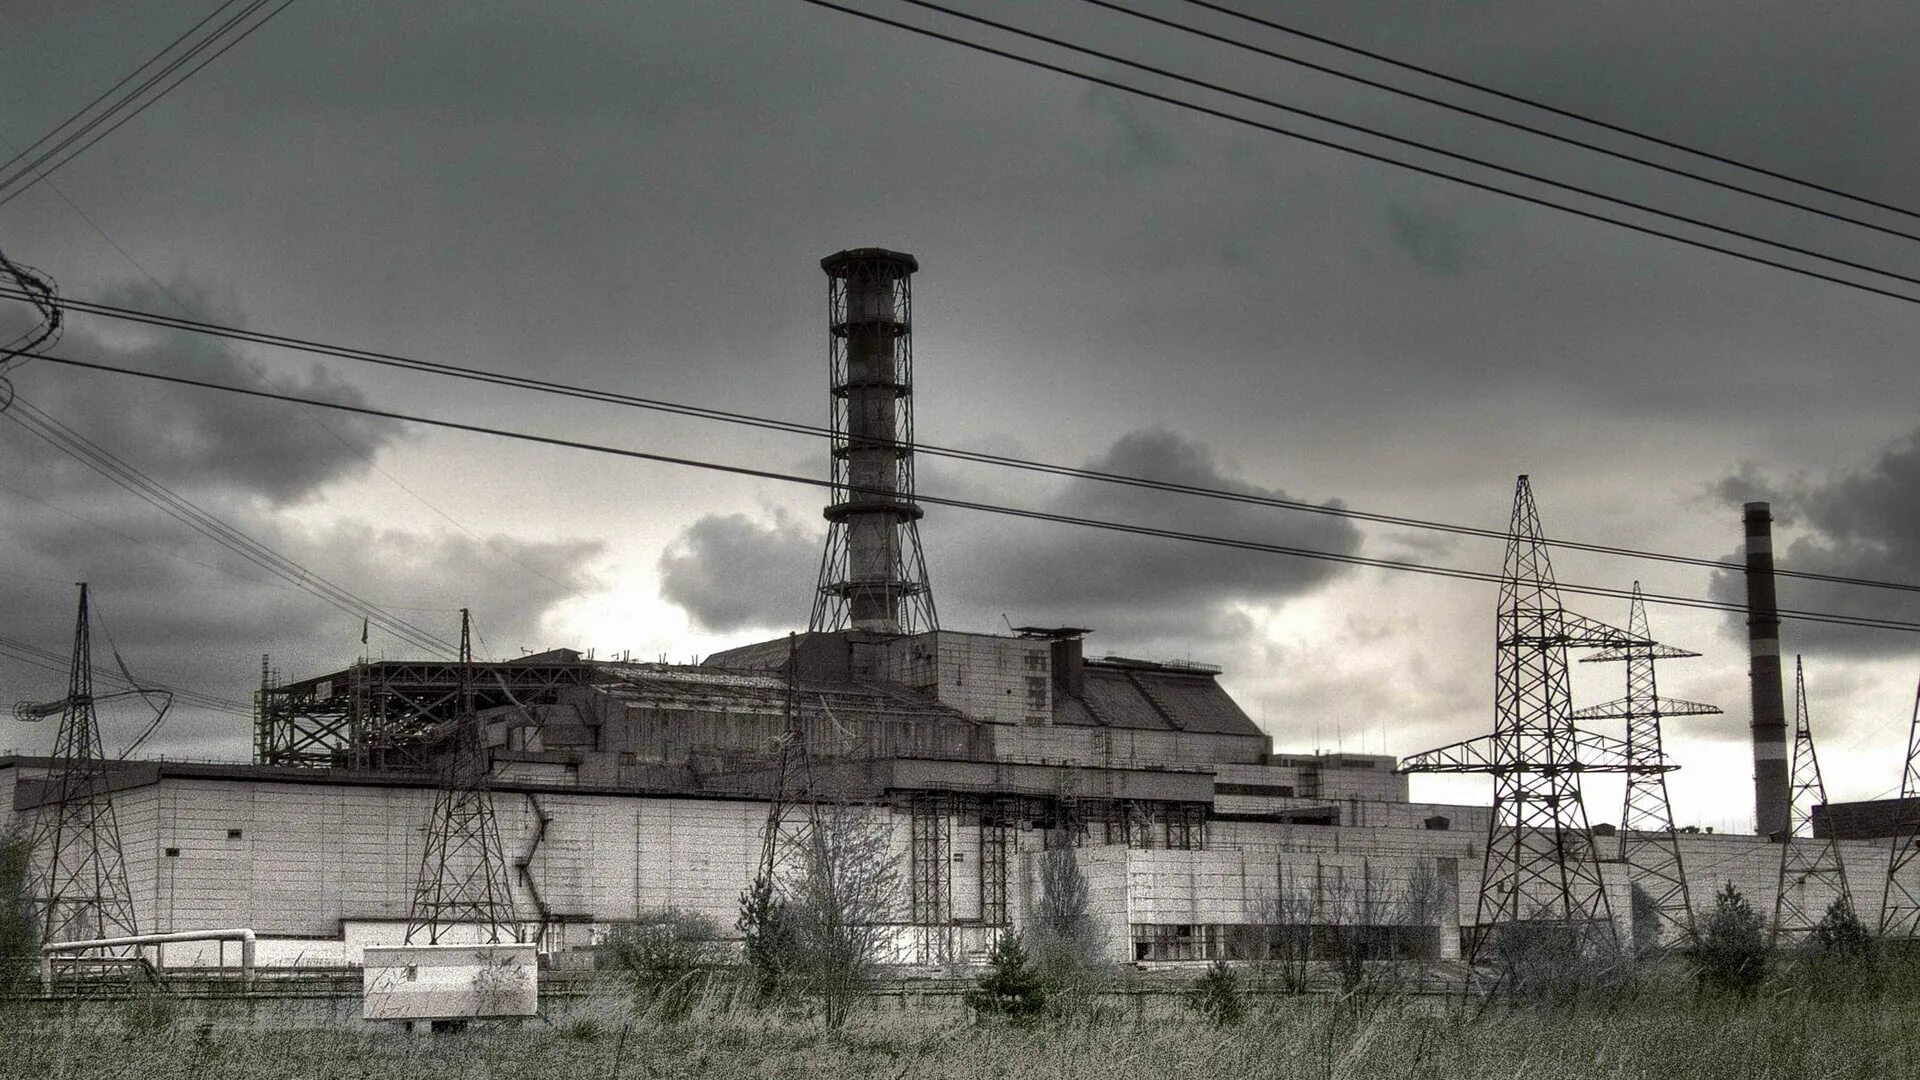 Http chernobyl. Чернобыль Припять АЭС. Сталкер 4 энергоблок. Припять атомная станция. Припять станция АЭС.